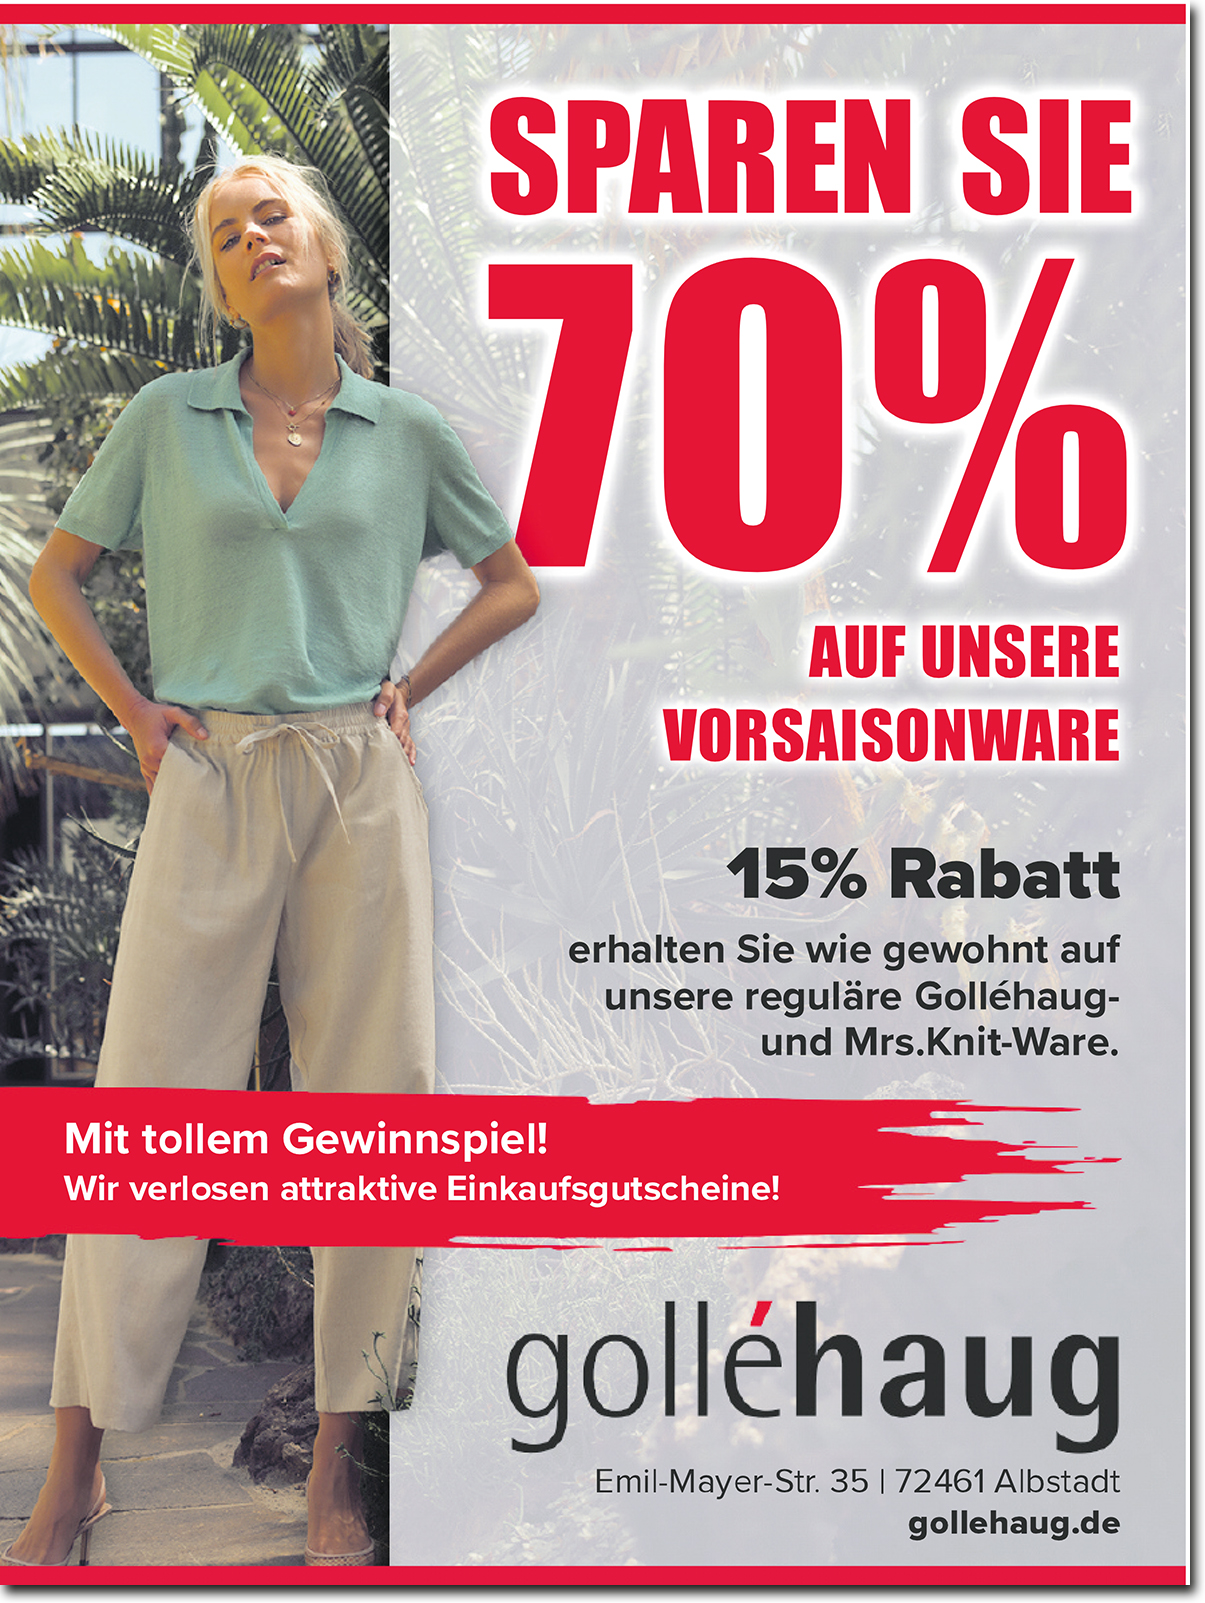 golléhaug GmbH